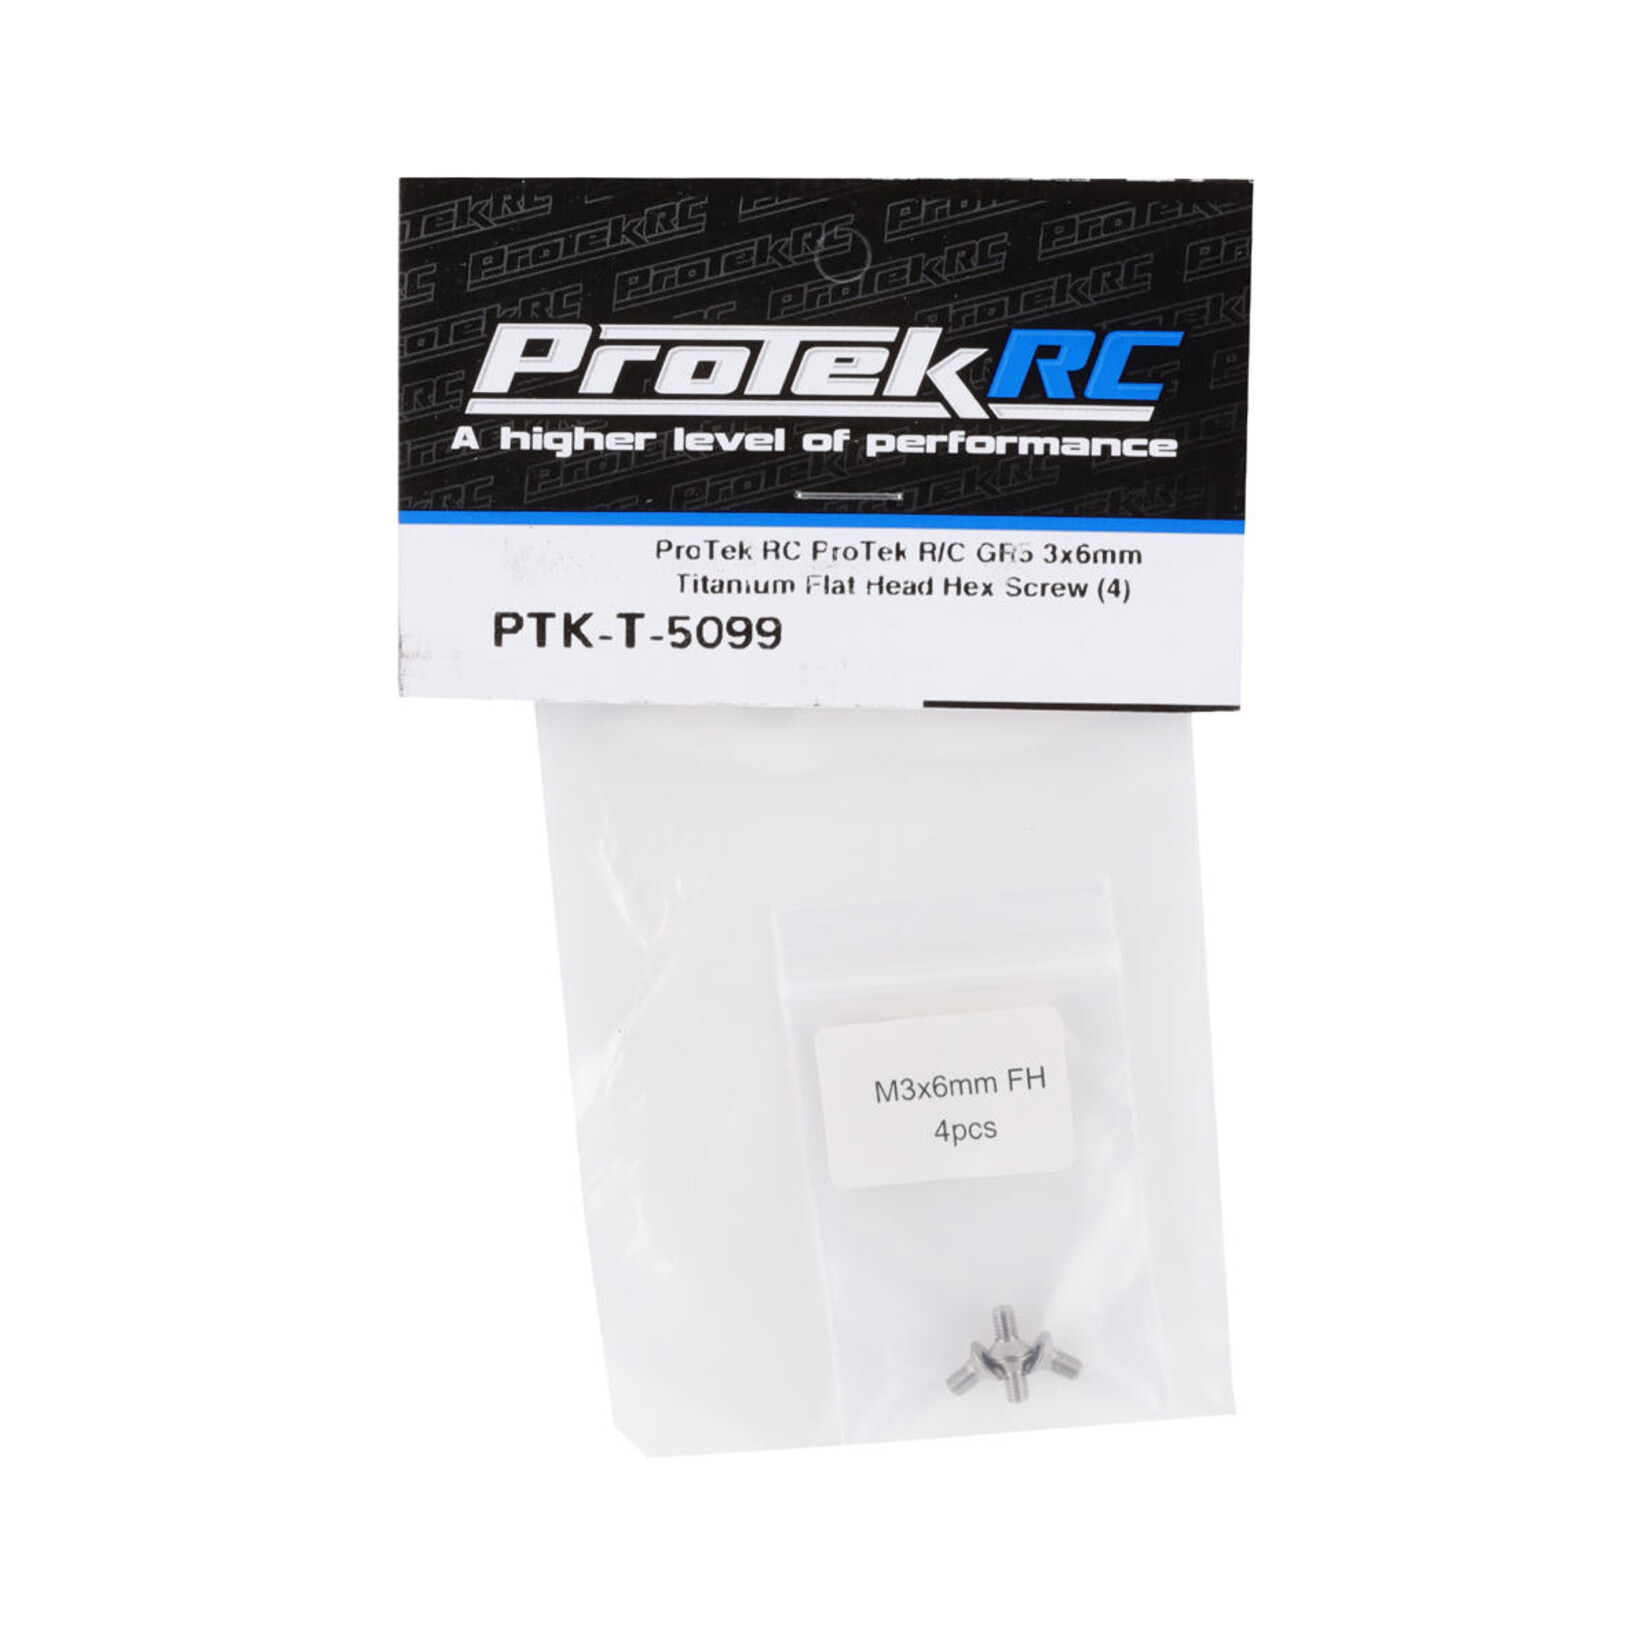 ProTek RC ProTek RC 3x6mm "Grade 5" Titanium Flat Head Hex Screw (4) #PTK-T-5099